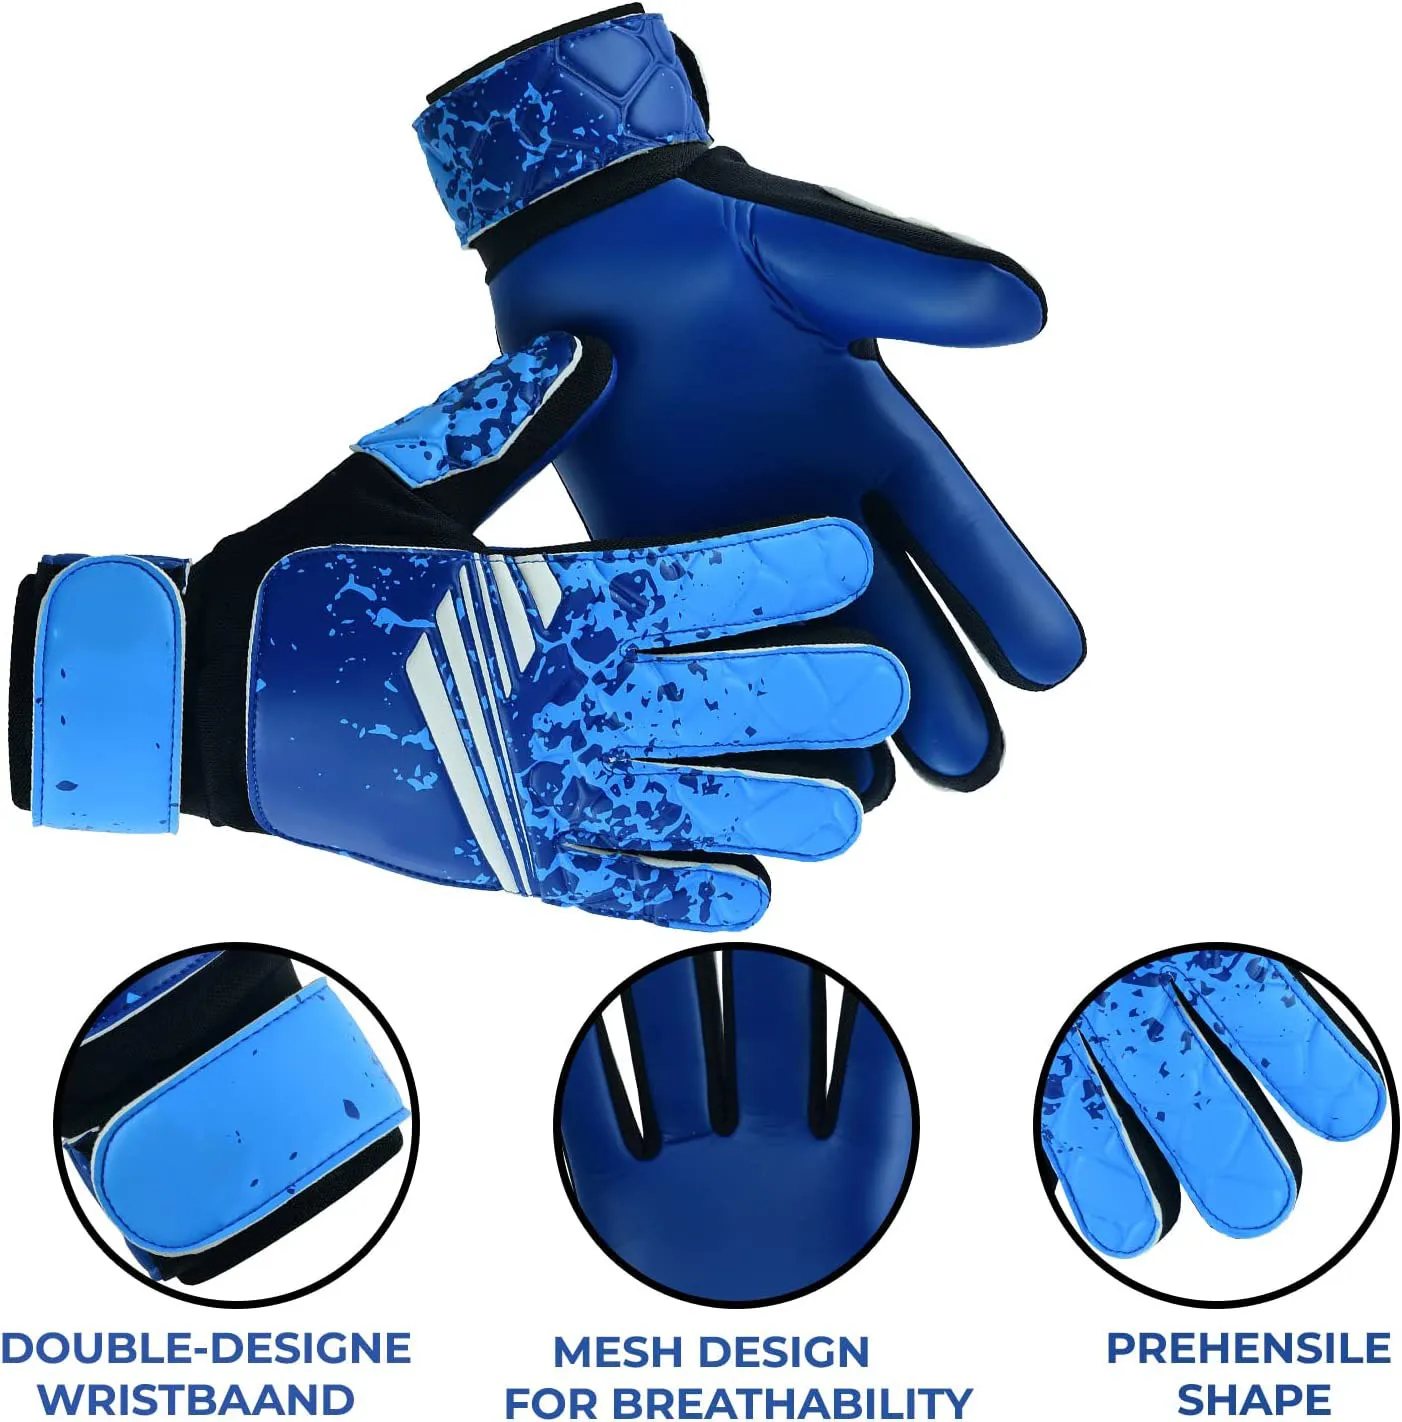 Guantes de portero de fútbol de edición limitada | El mejor regalo para  guantes de portero de fútbol para niños, jóvenes, adultos y hombres,  guantes